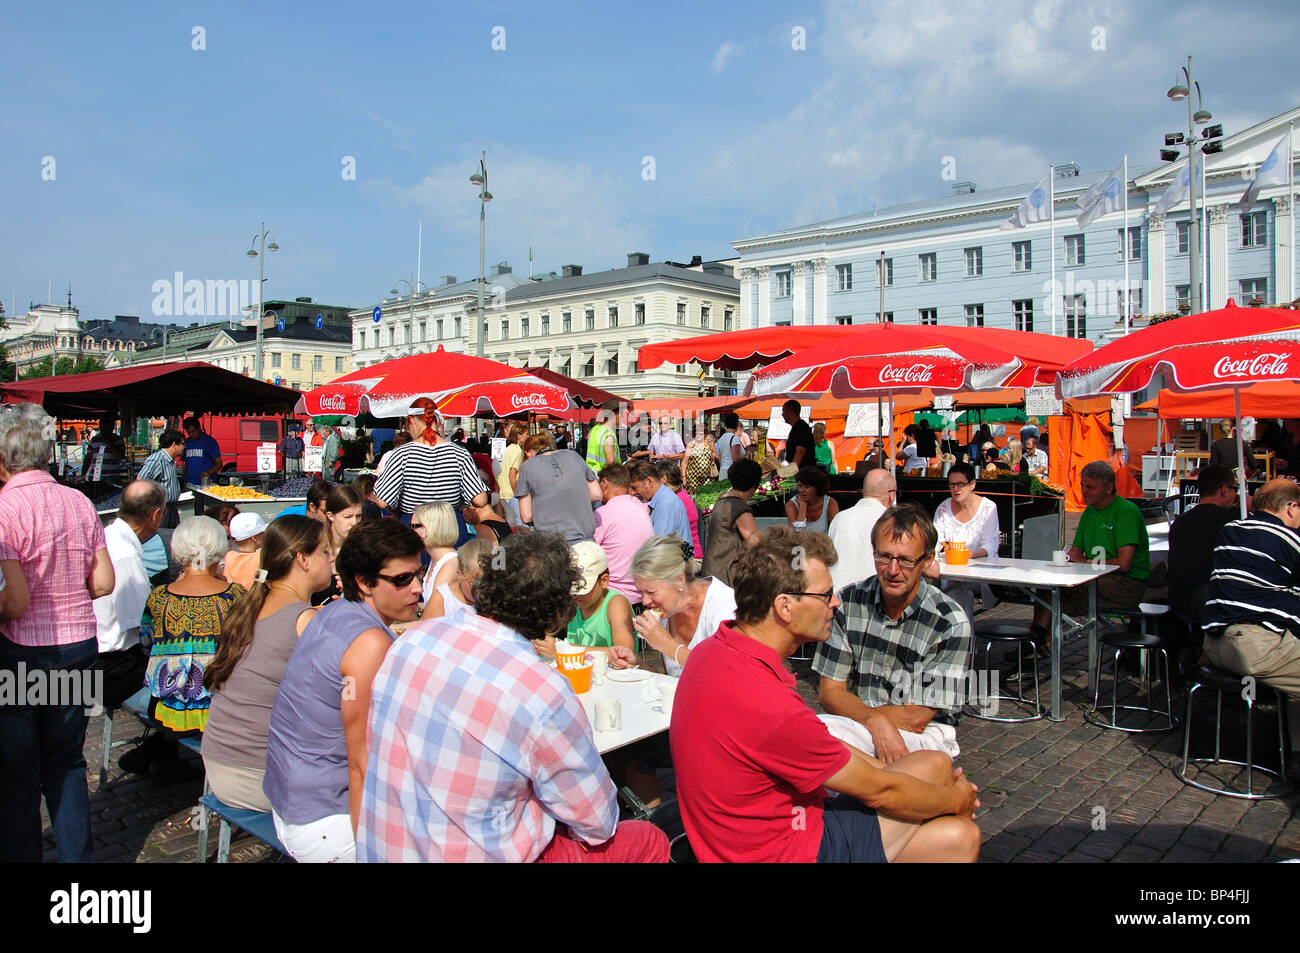 Mercato all'aperto, Kauppatori Market Square, Helsinki, regione di Uusimaa, la Repubblica di Finlandia Foto Stock